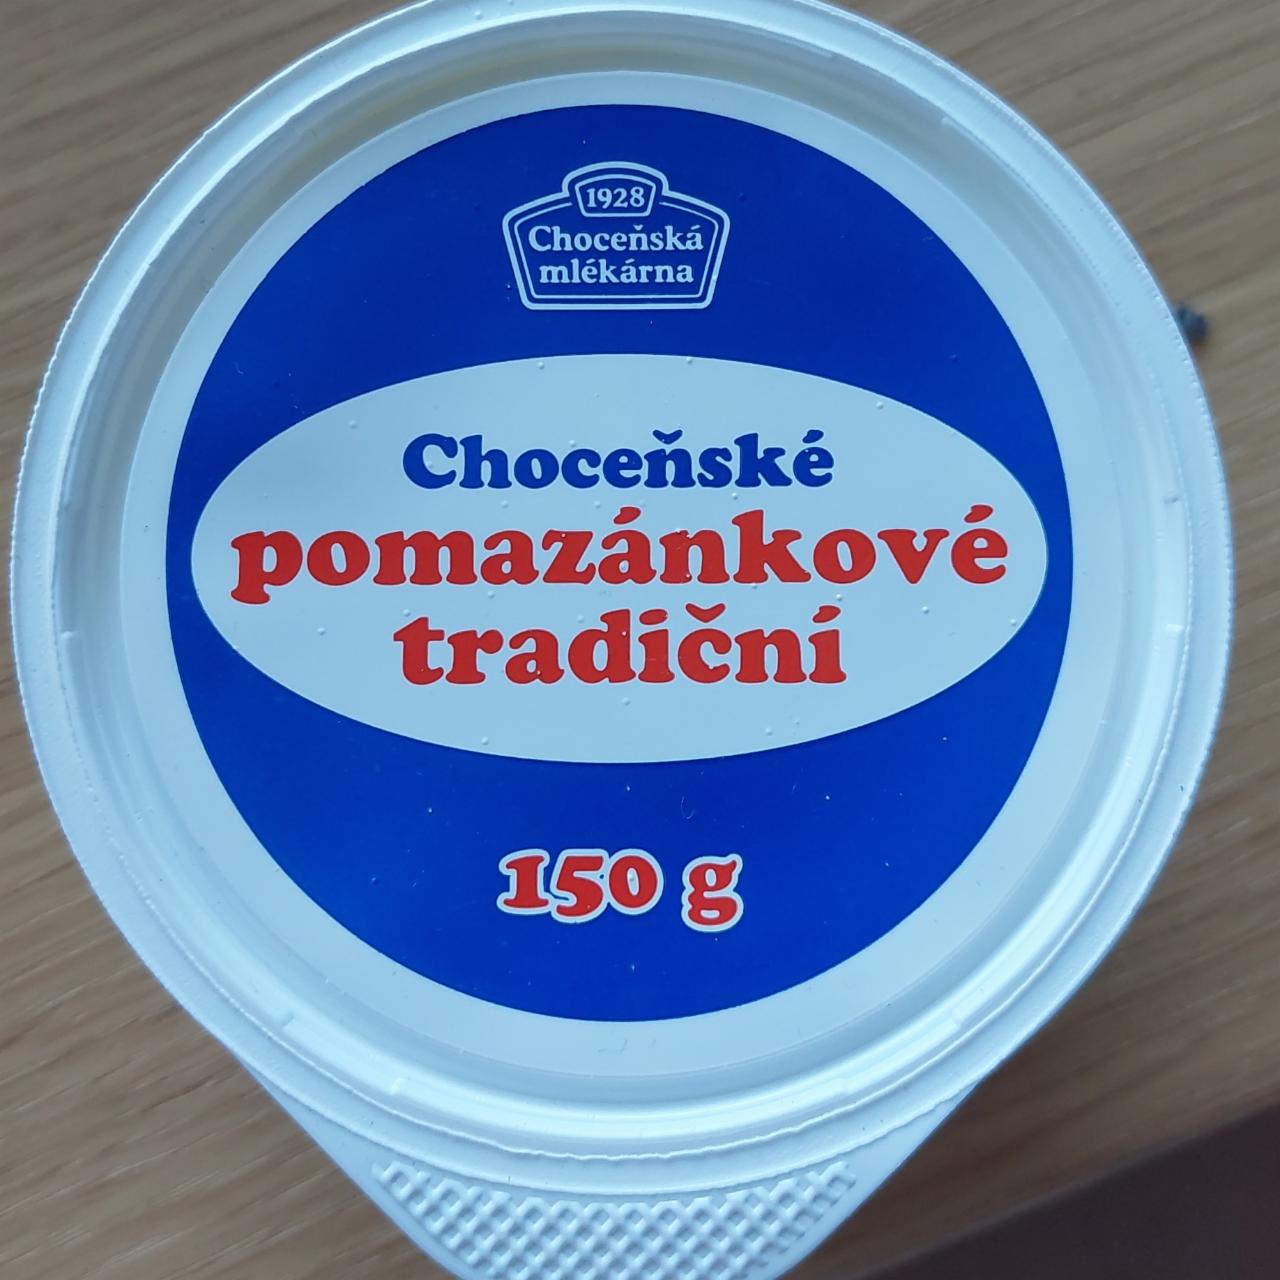 Фото - Традиційний ароматизований спред Choceň - молочний продукт Сhoceňske